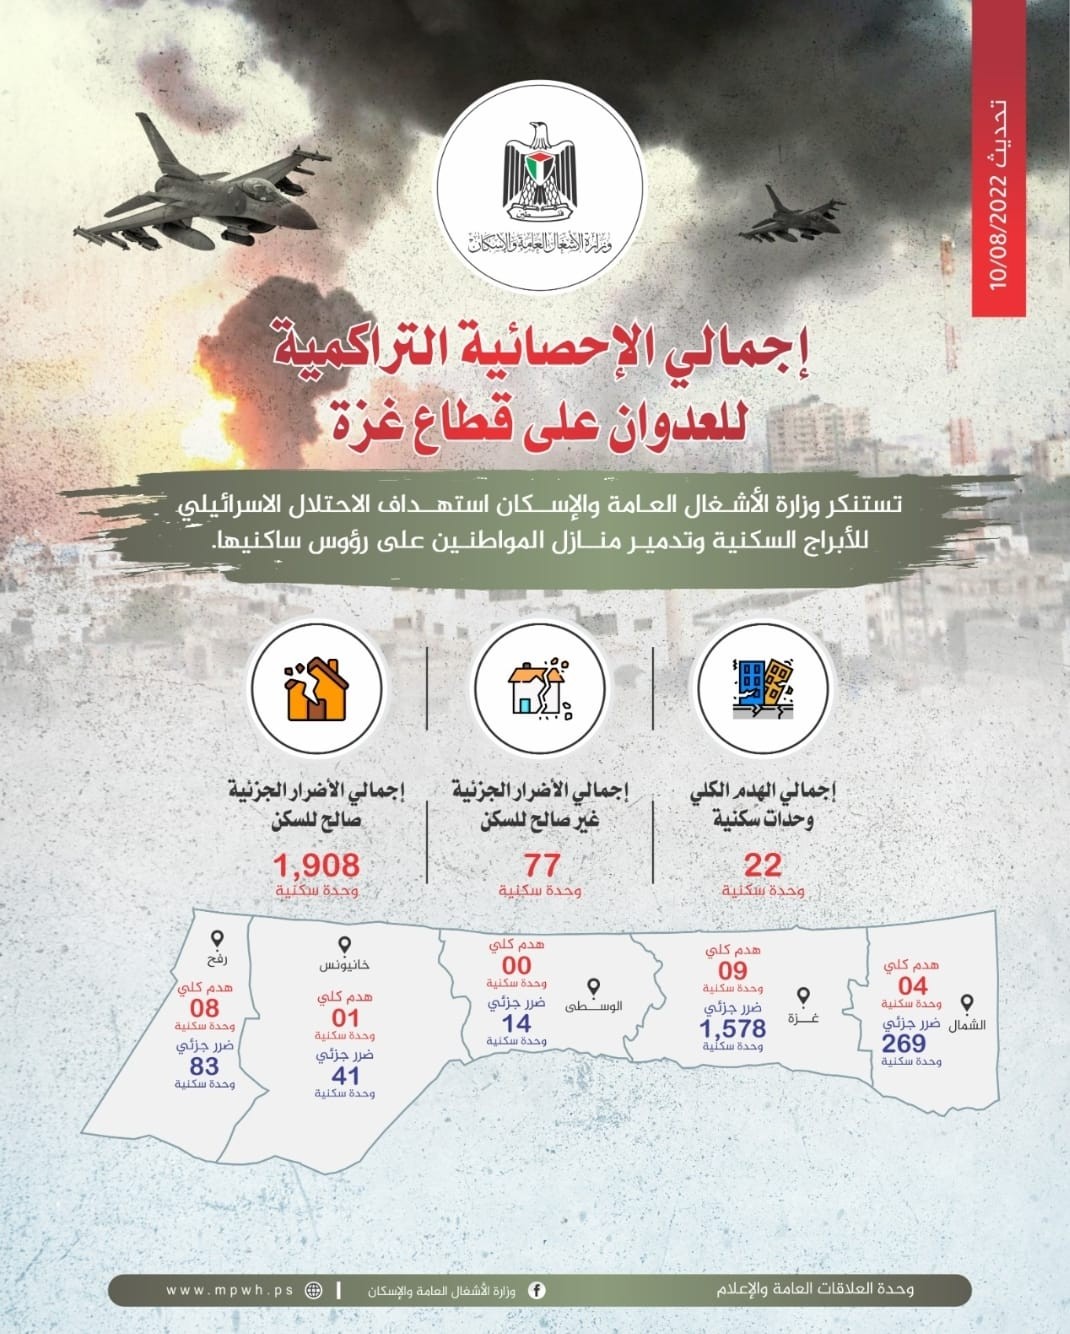 وزارة الأشغال العامة والإسكان تُصدر إجمالي الاحصائية التراكمية للعدوان على قطاع غزة..jpg